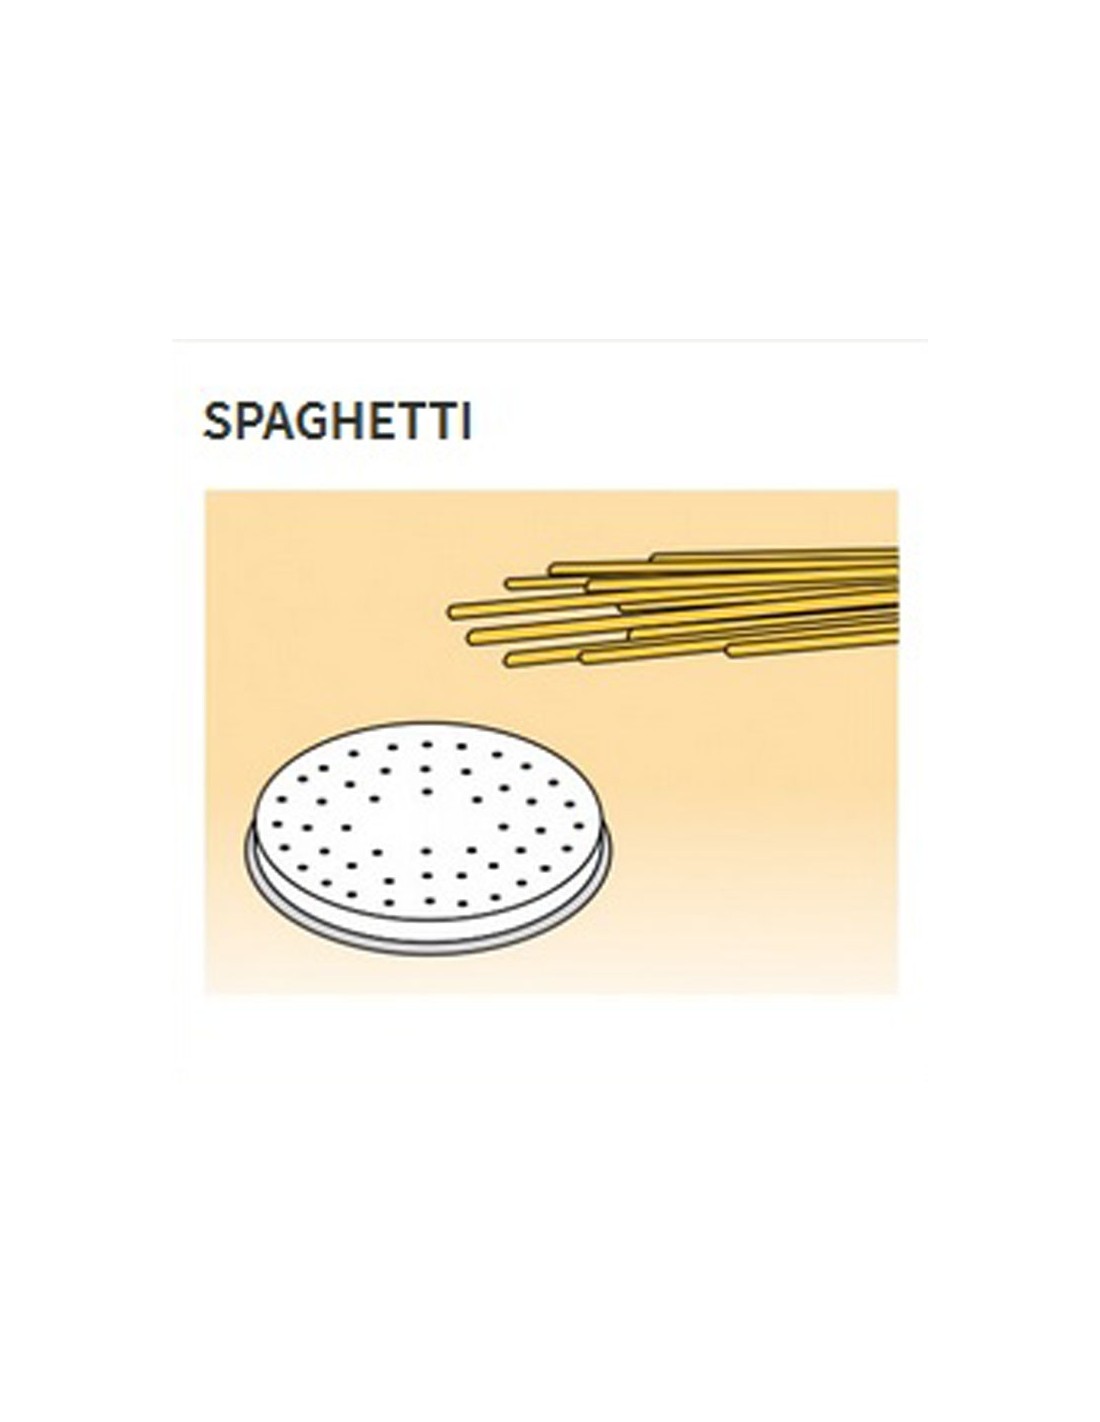 Trafile formati vari in lega ottone - Bronzo - Per macchina pasta fresca modello MPF15 - Spaghetti Ø mm 2